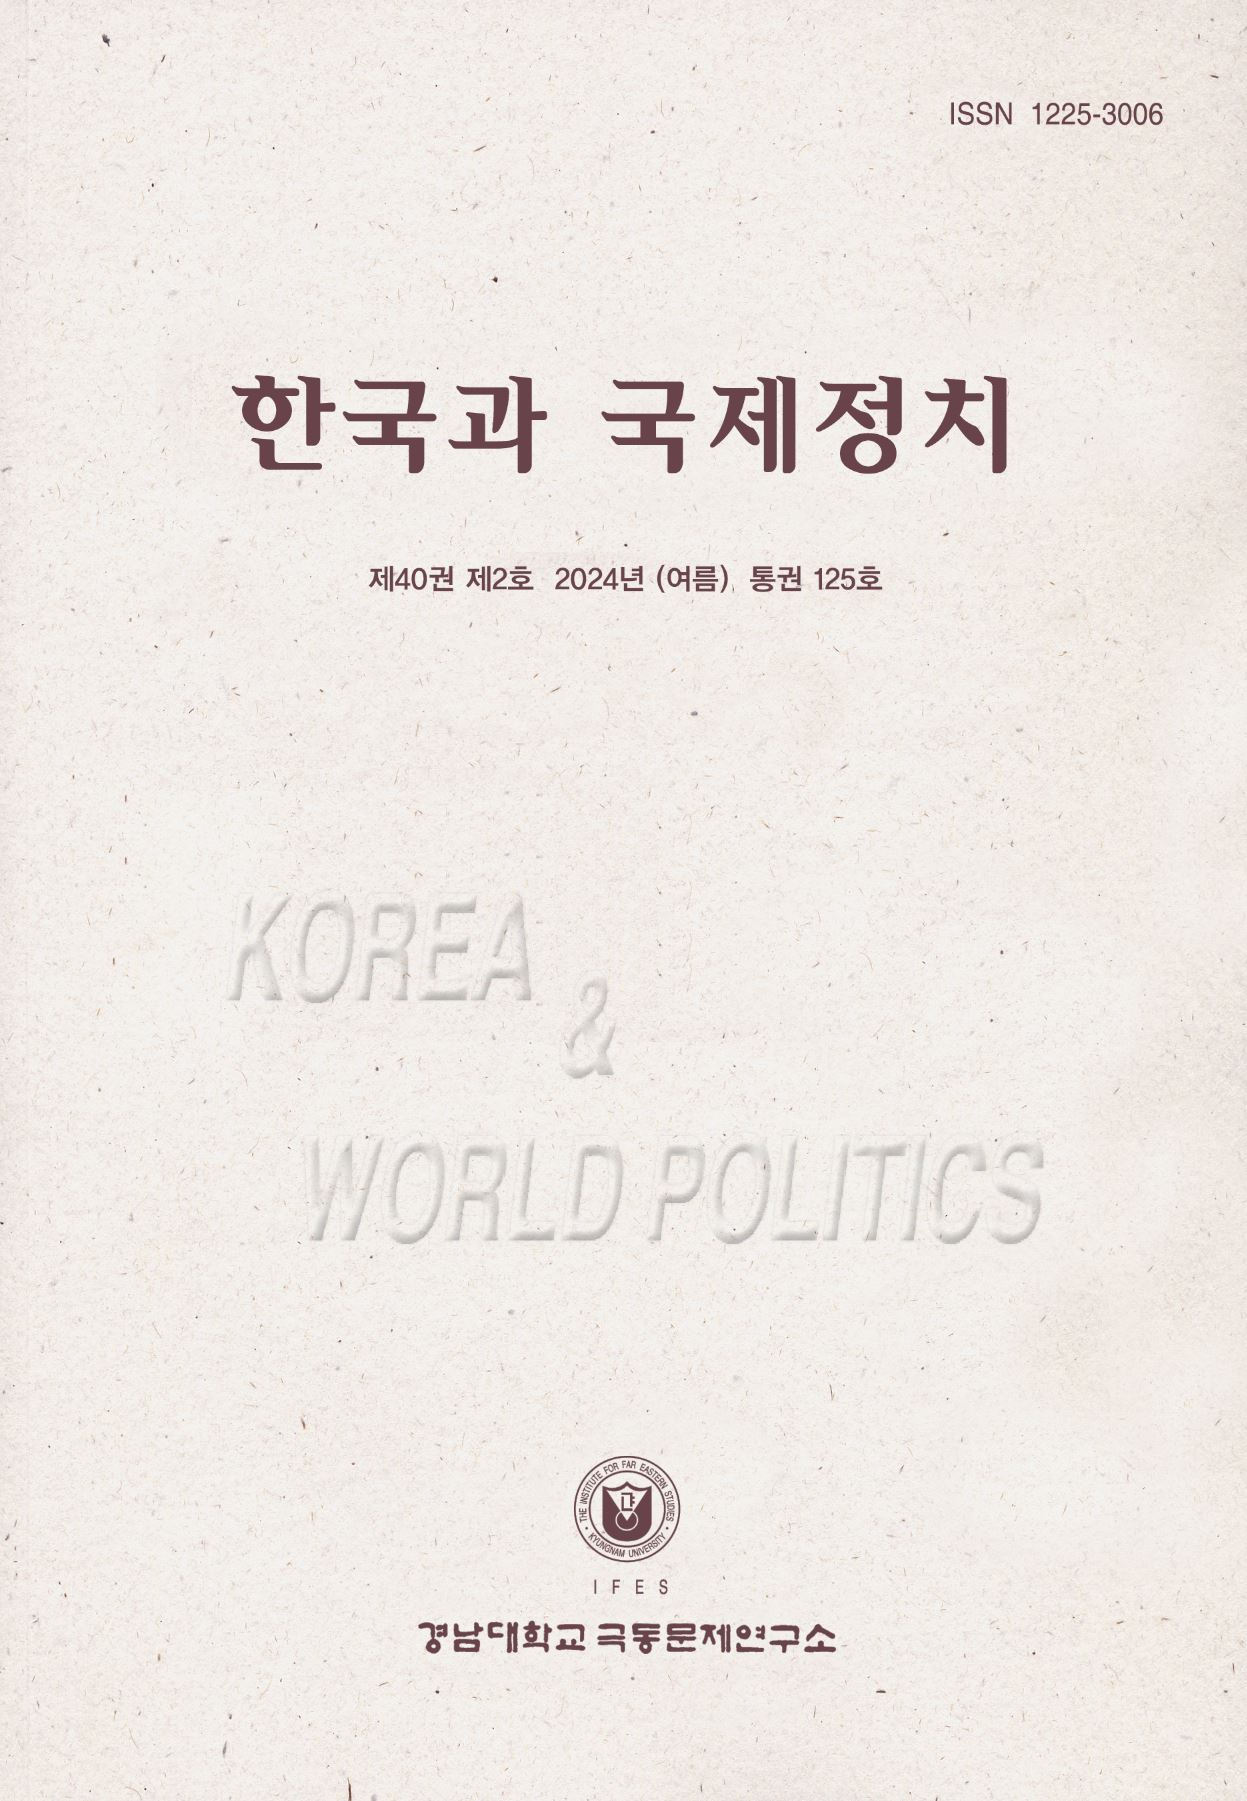 Korea and World Politics, Vol.40, No.2